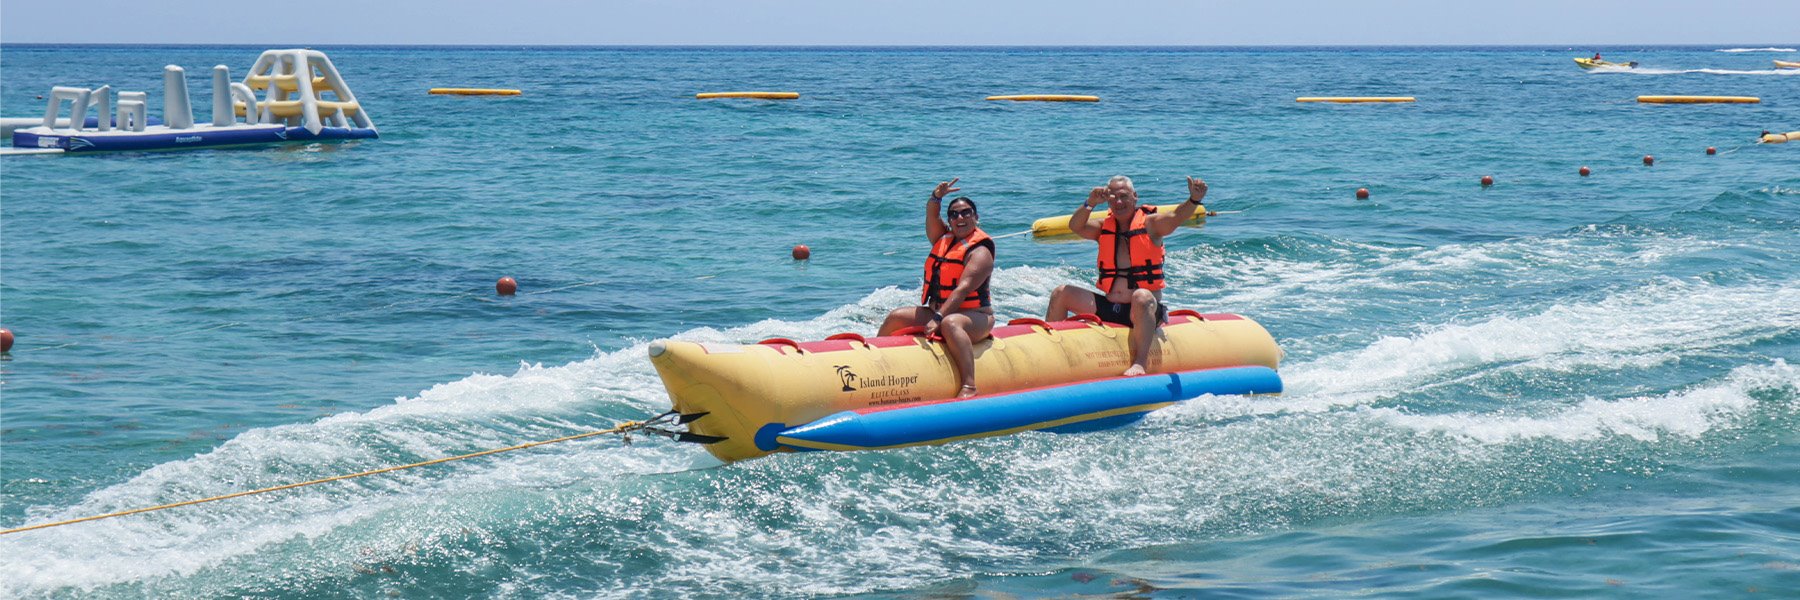 Banana boat ride – Playa Mia